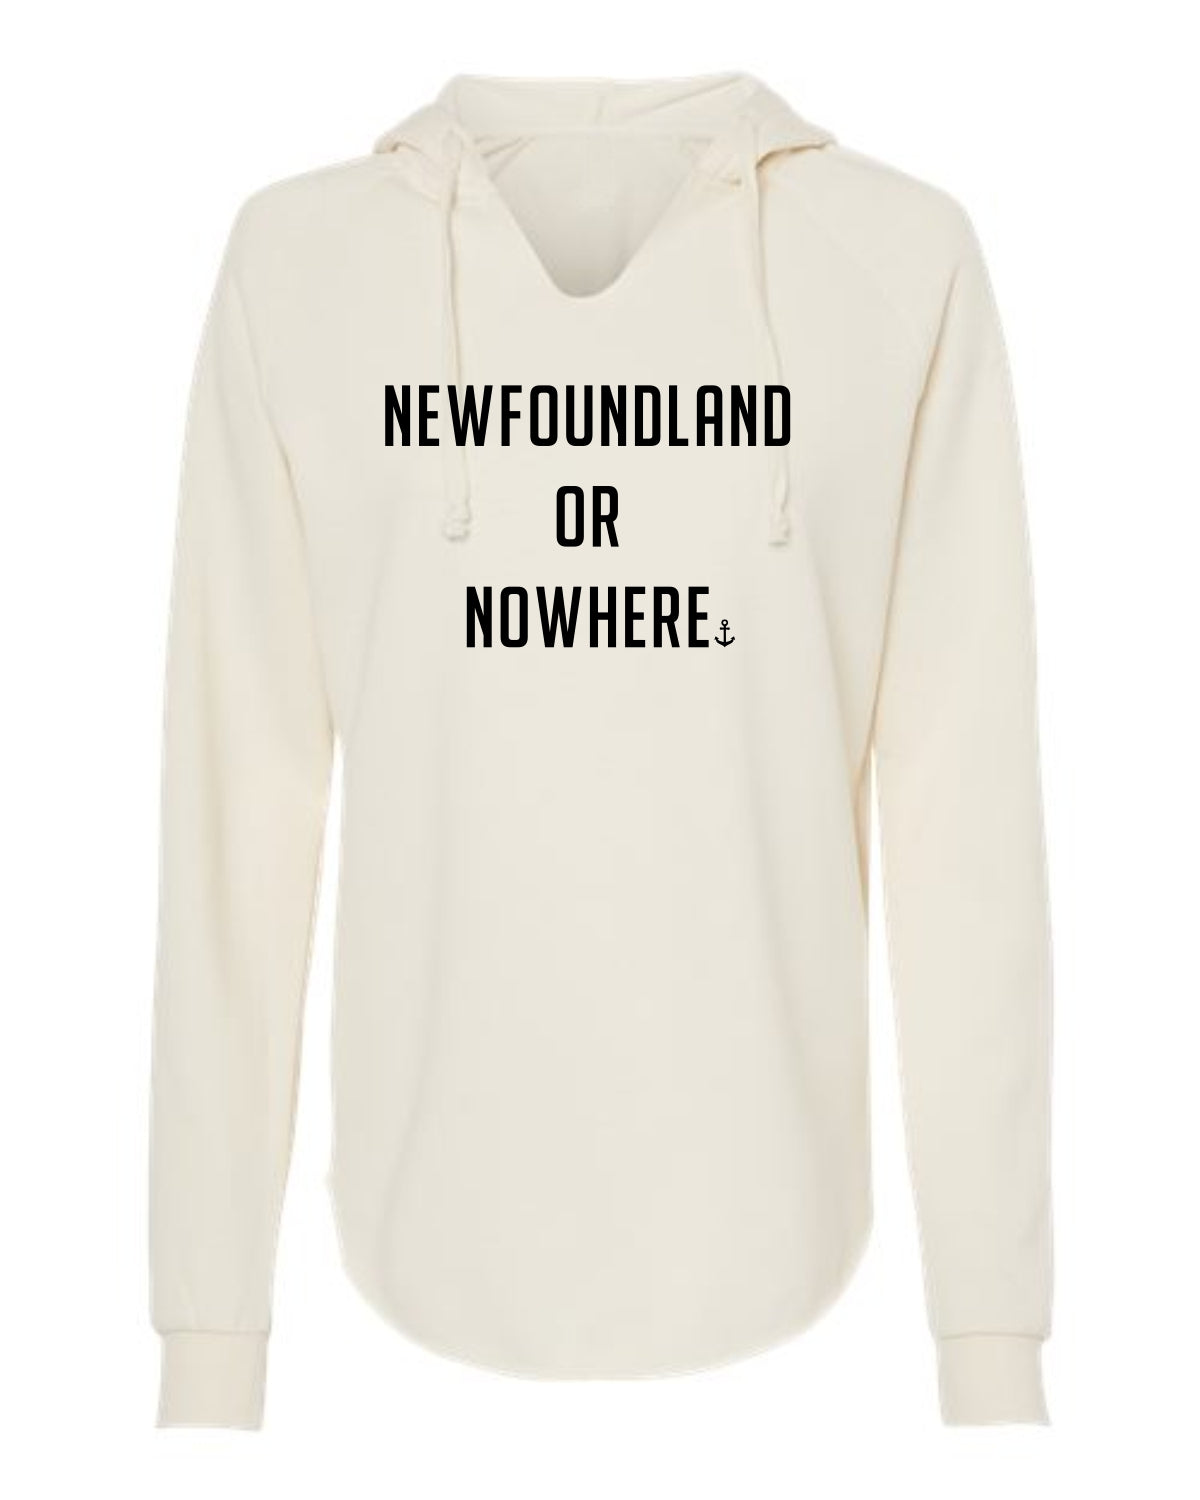 "Newfoundland Or Nowhere" Ladies' Hoodie